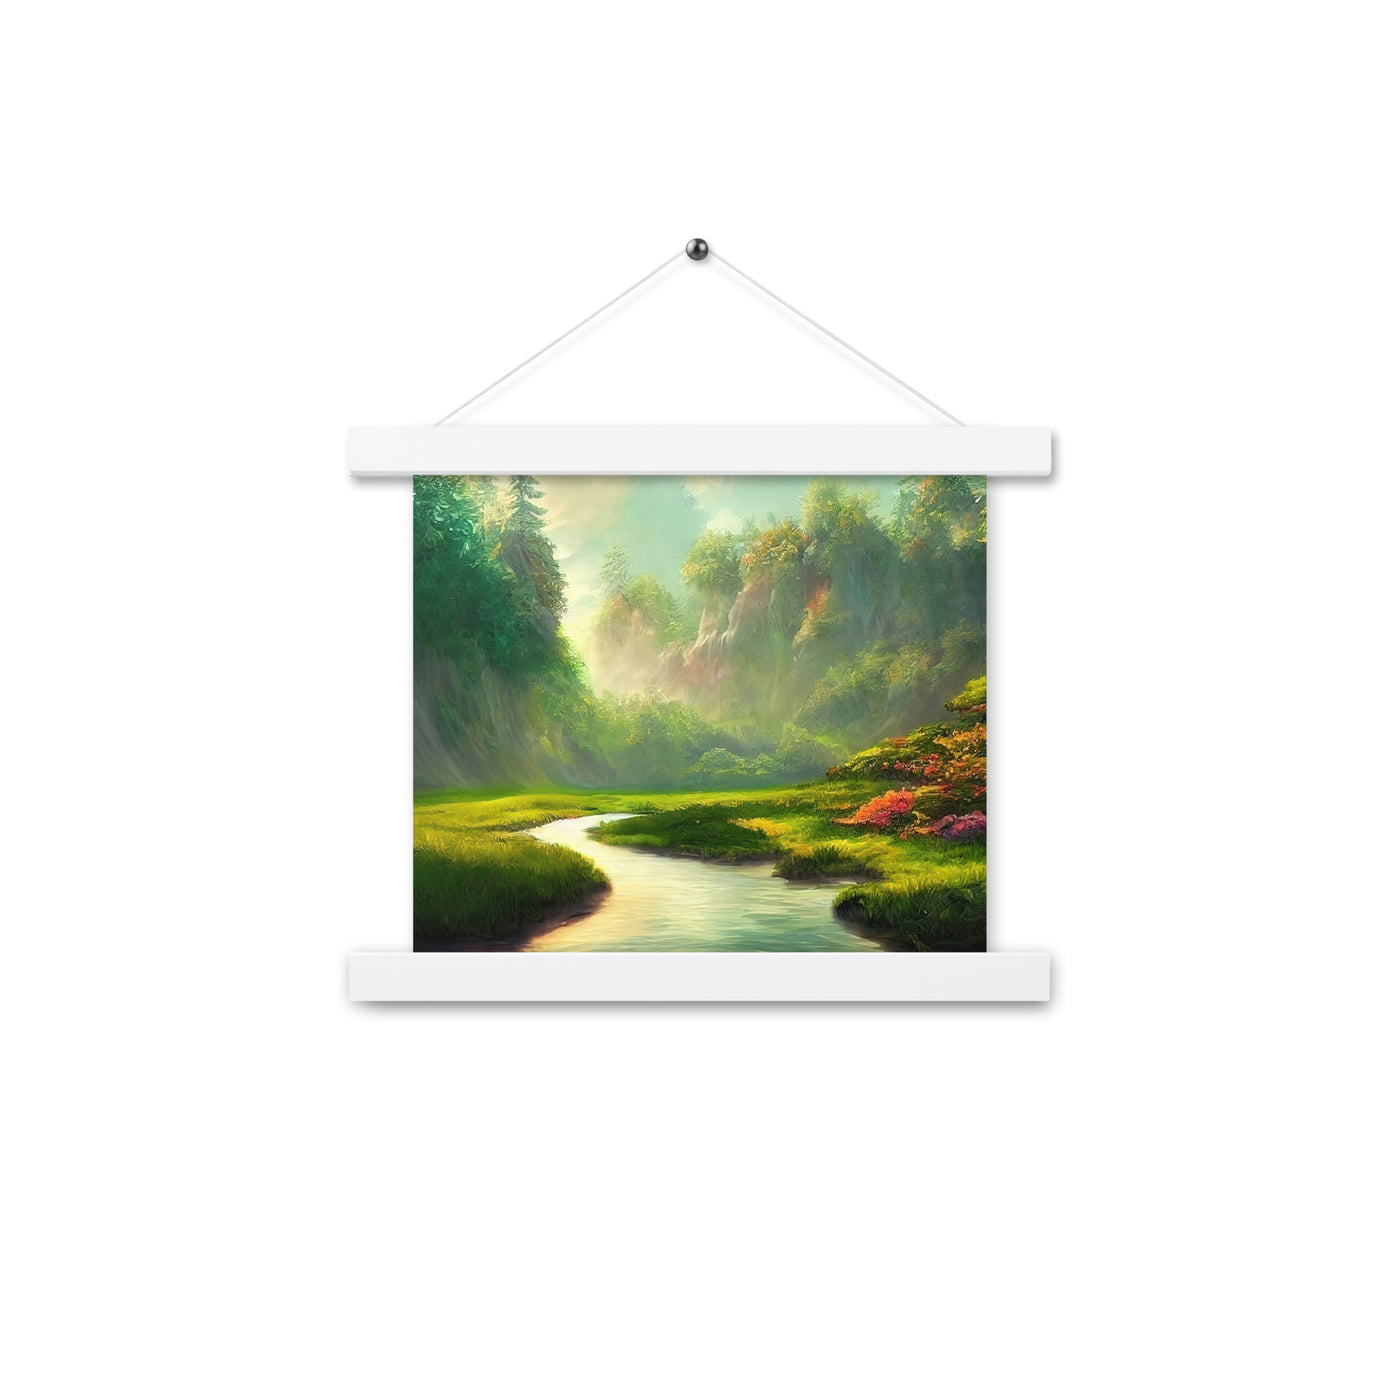 Bach im tropischen Wald - Landschaftsmalerei - Premium Poster mit Aufhängung camping xxx 25.4 x 25.4 cm